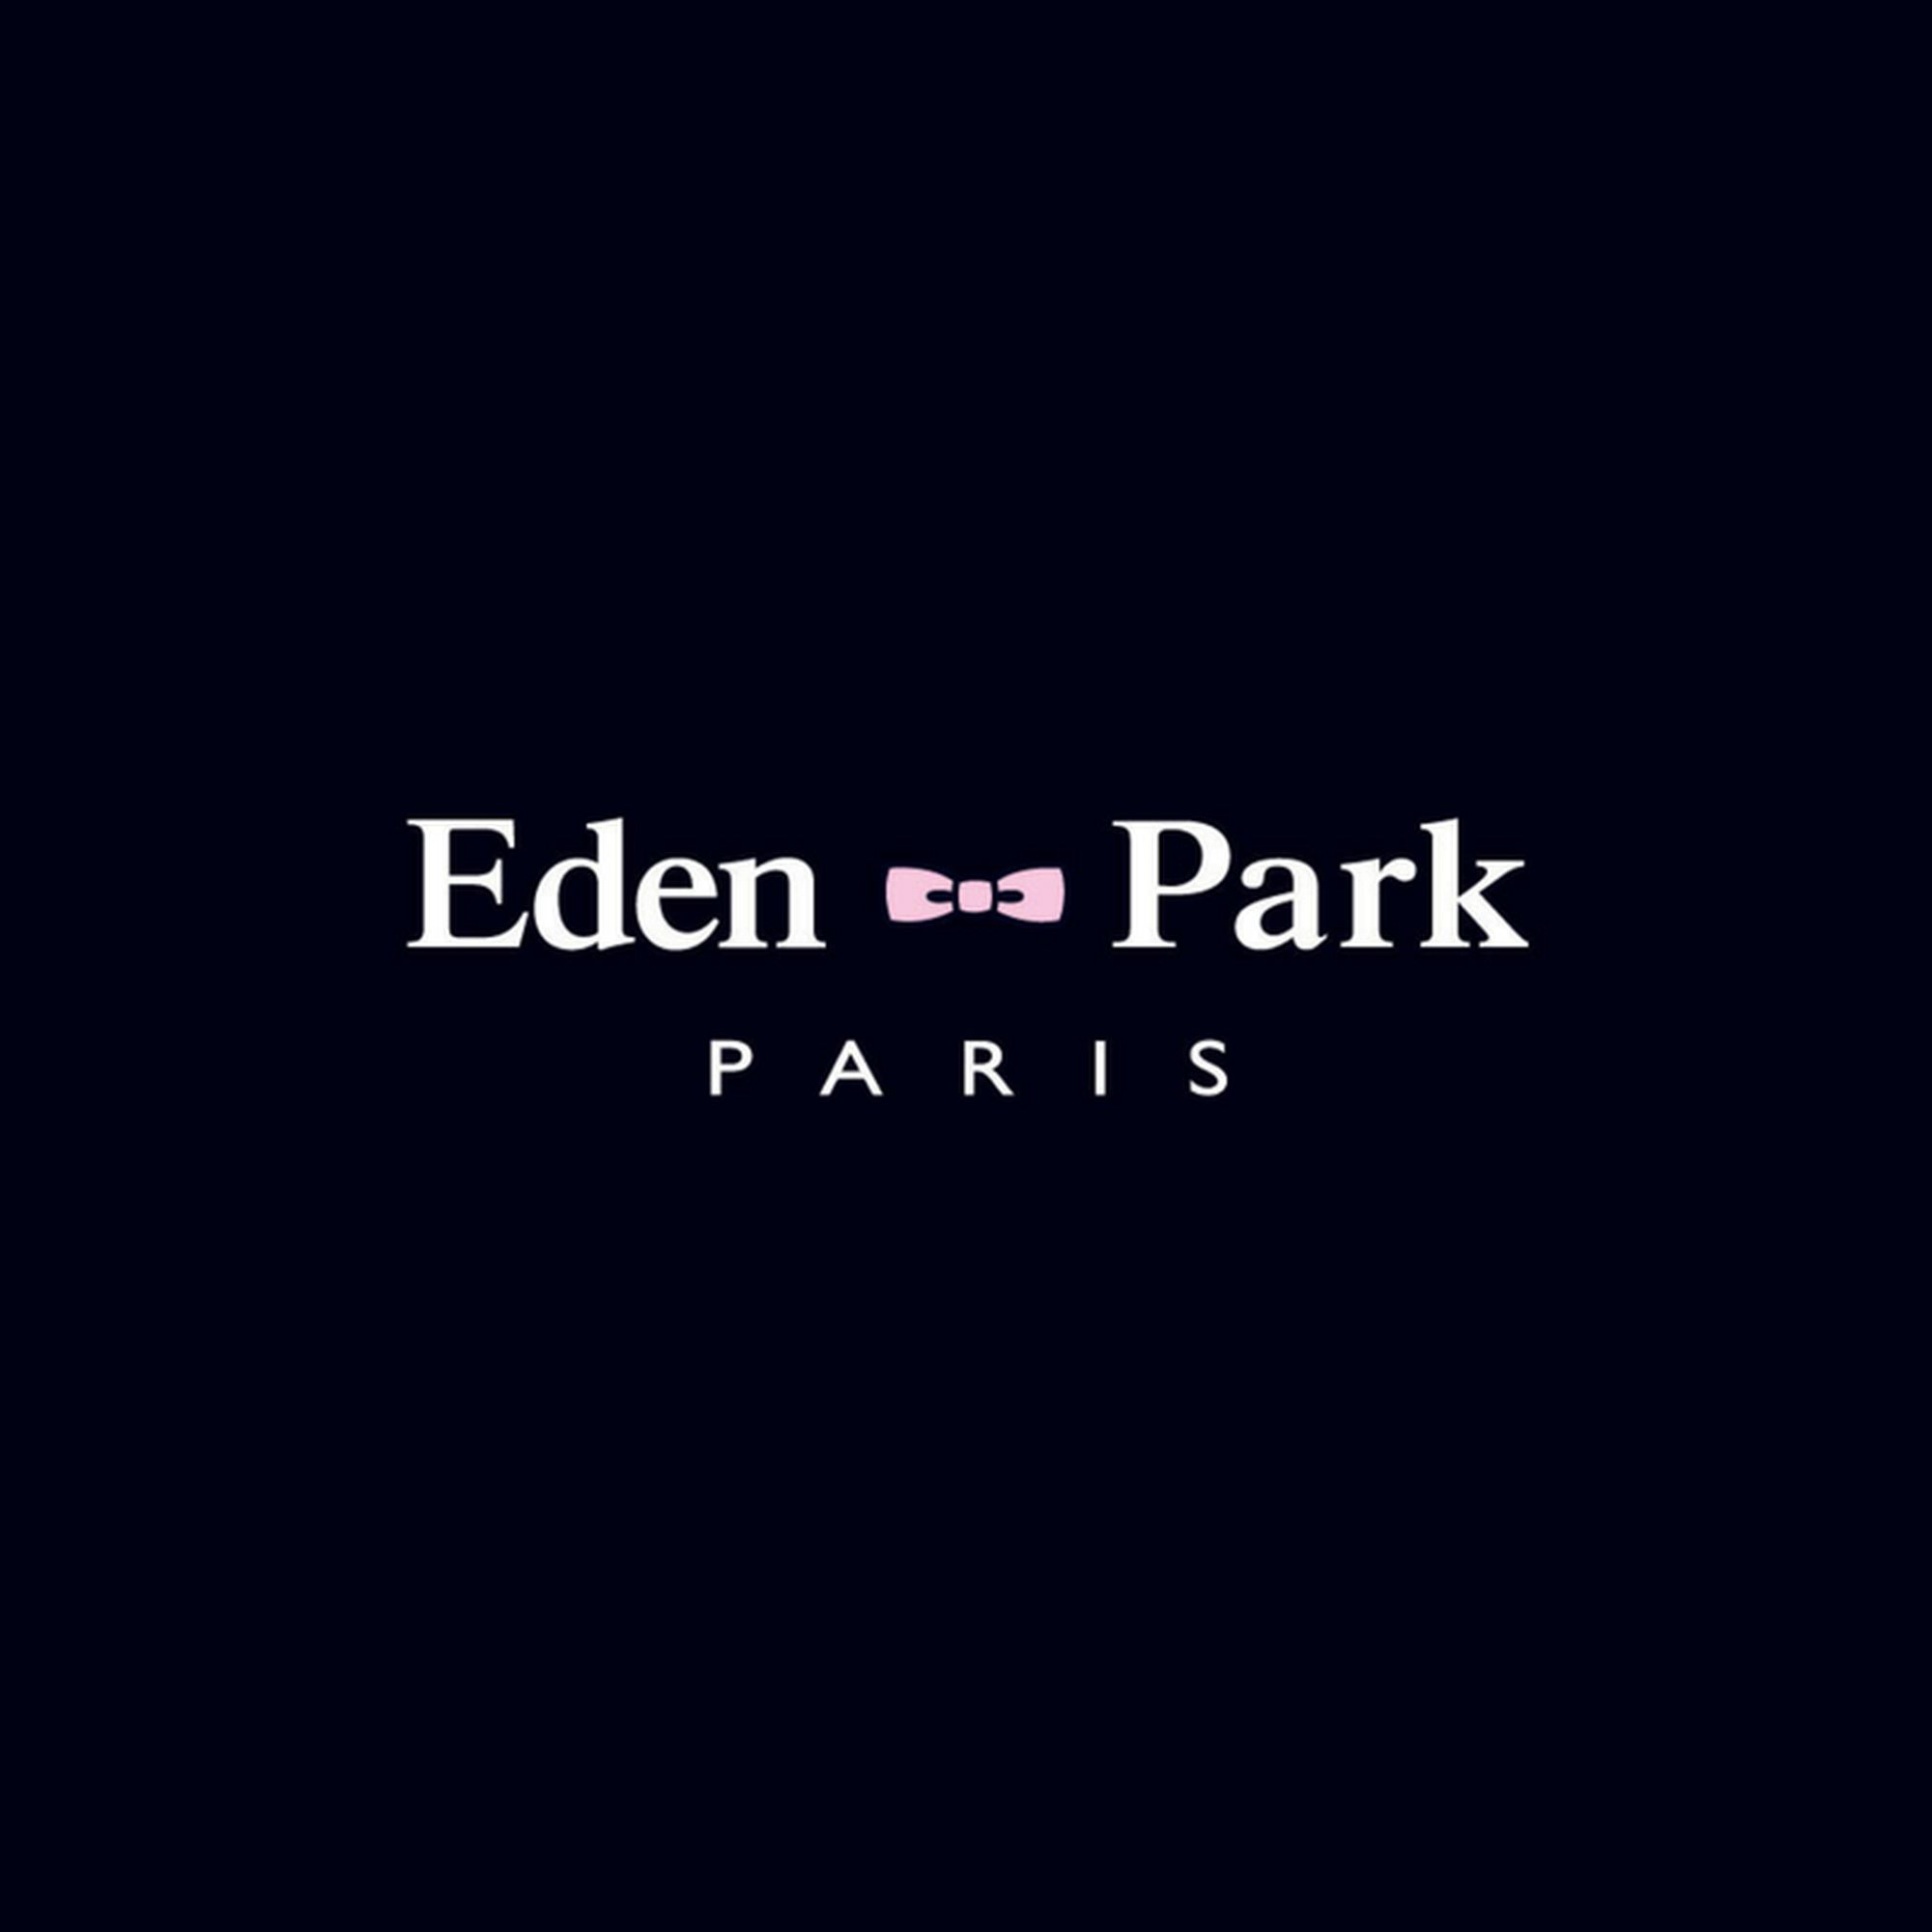 Logo_Eden_Park.jpg